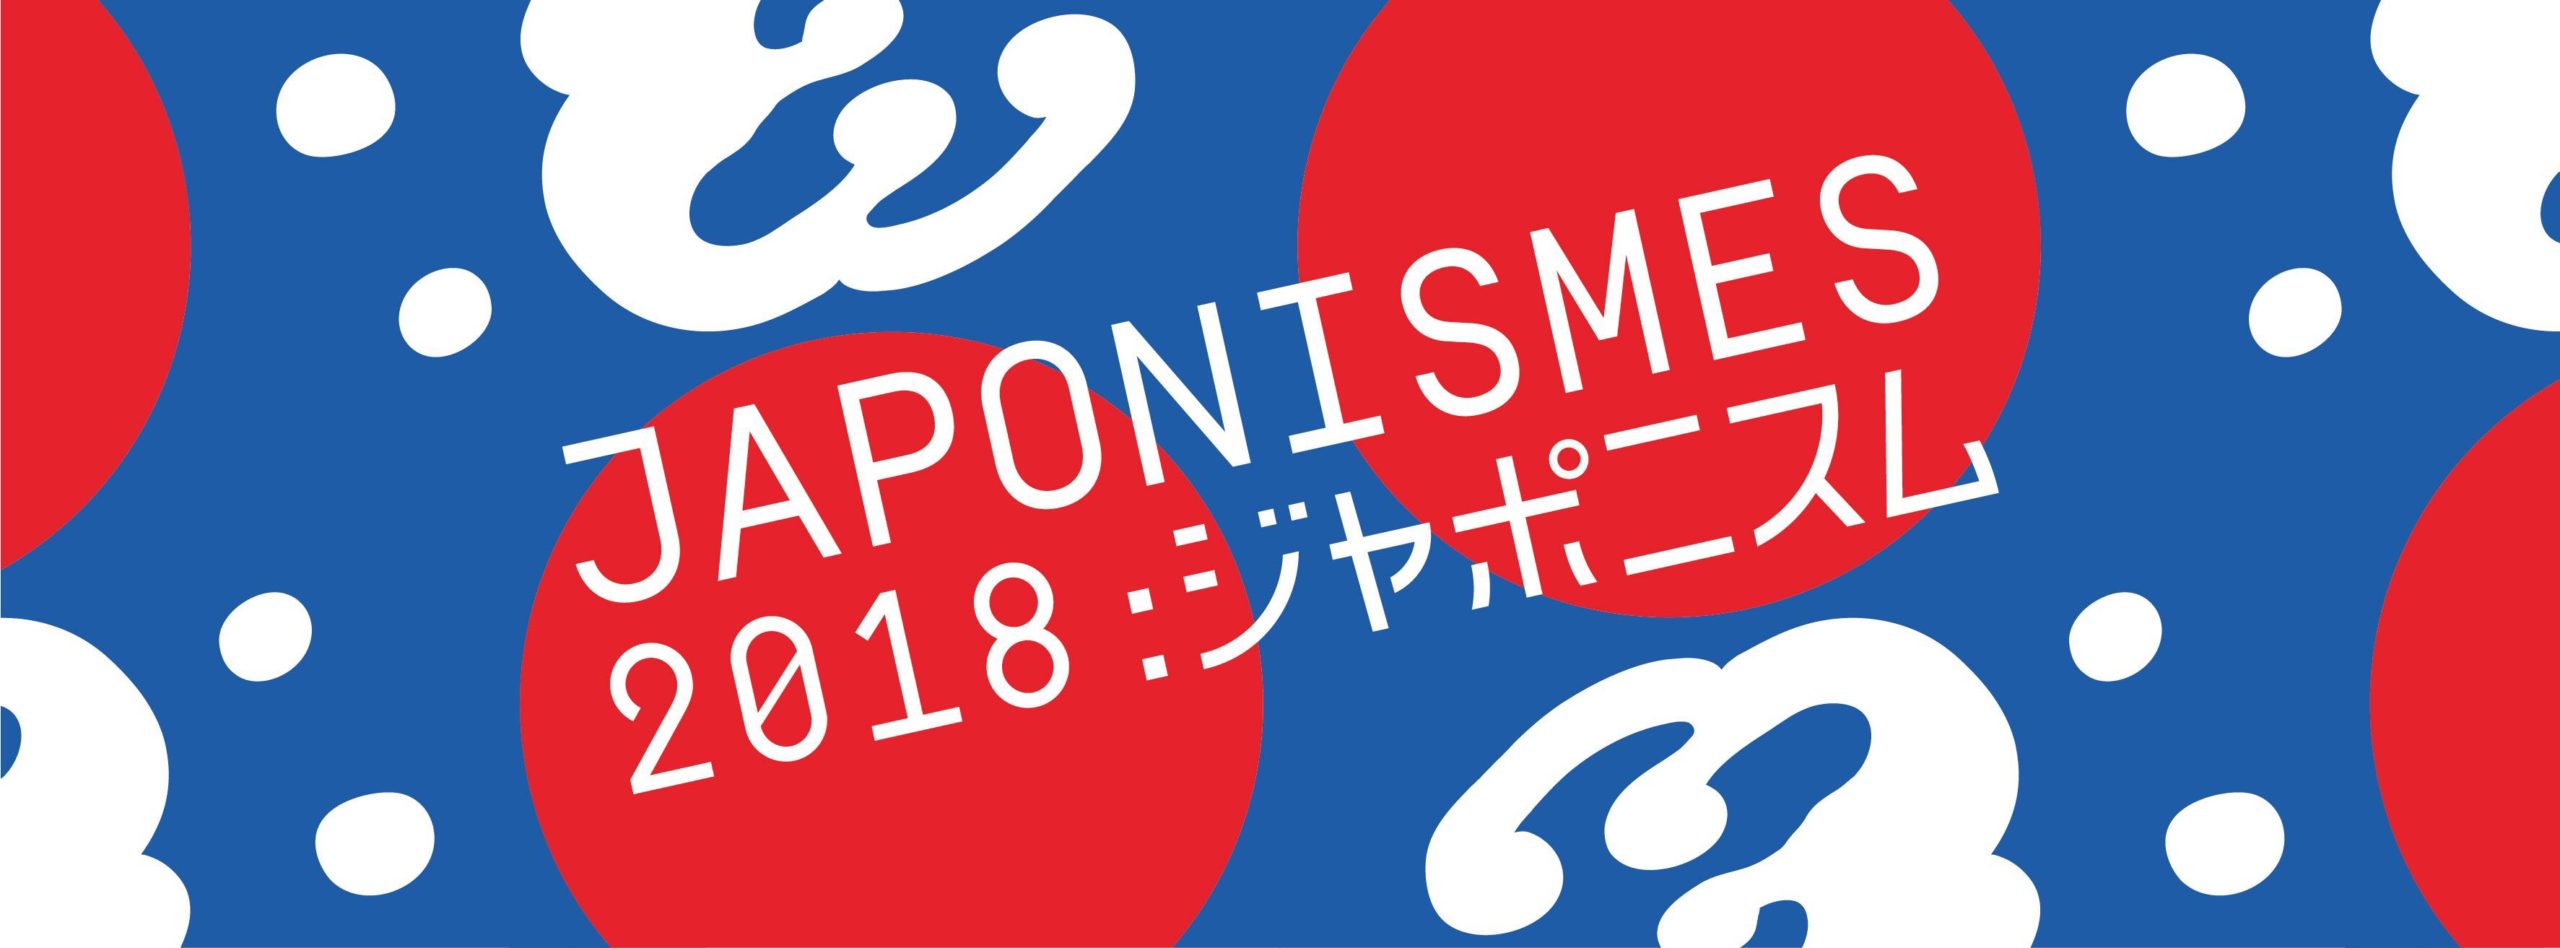 OUVERTURE « JAPONISMES 2018 : LES AMES EN RESONANCE »